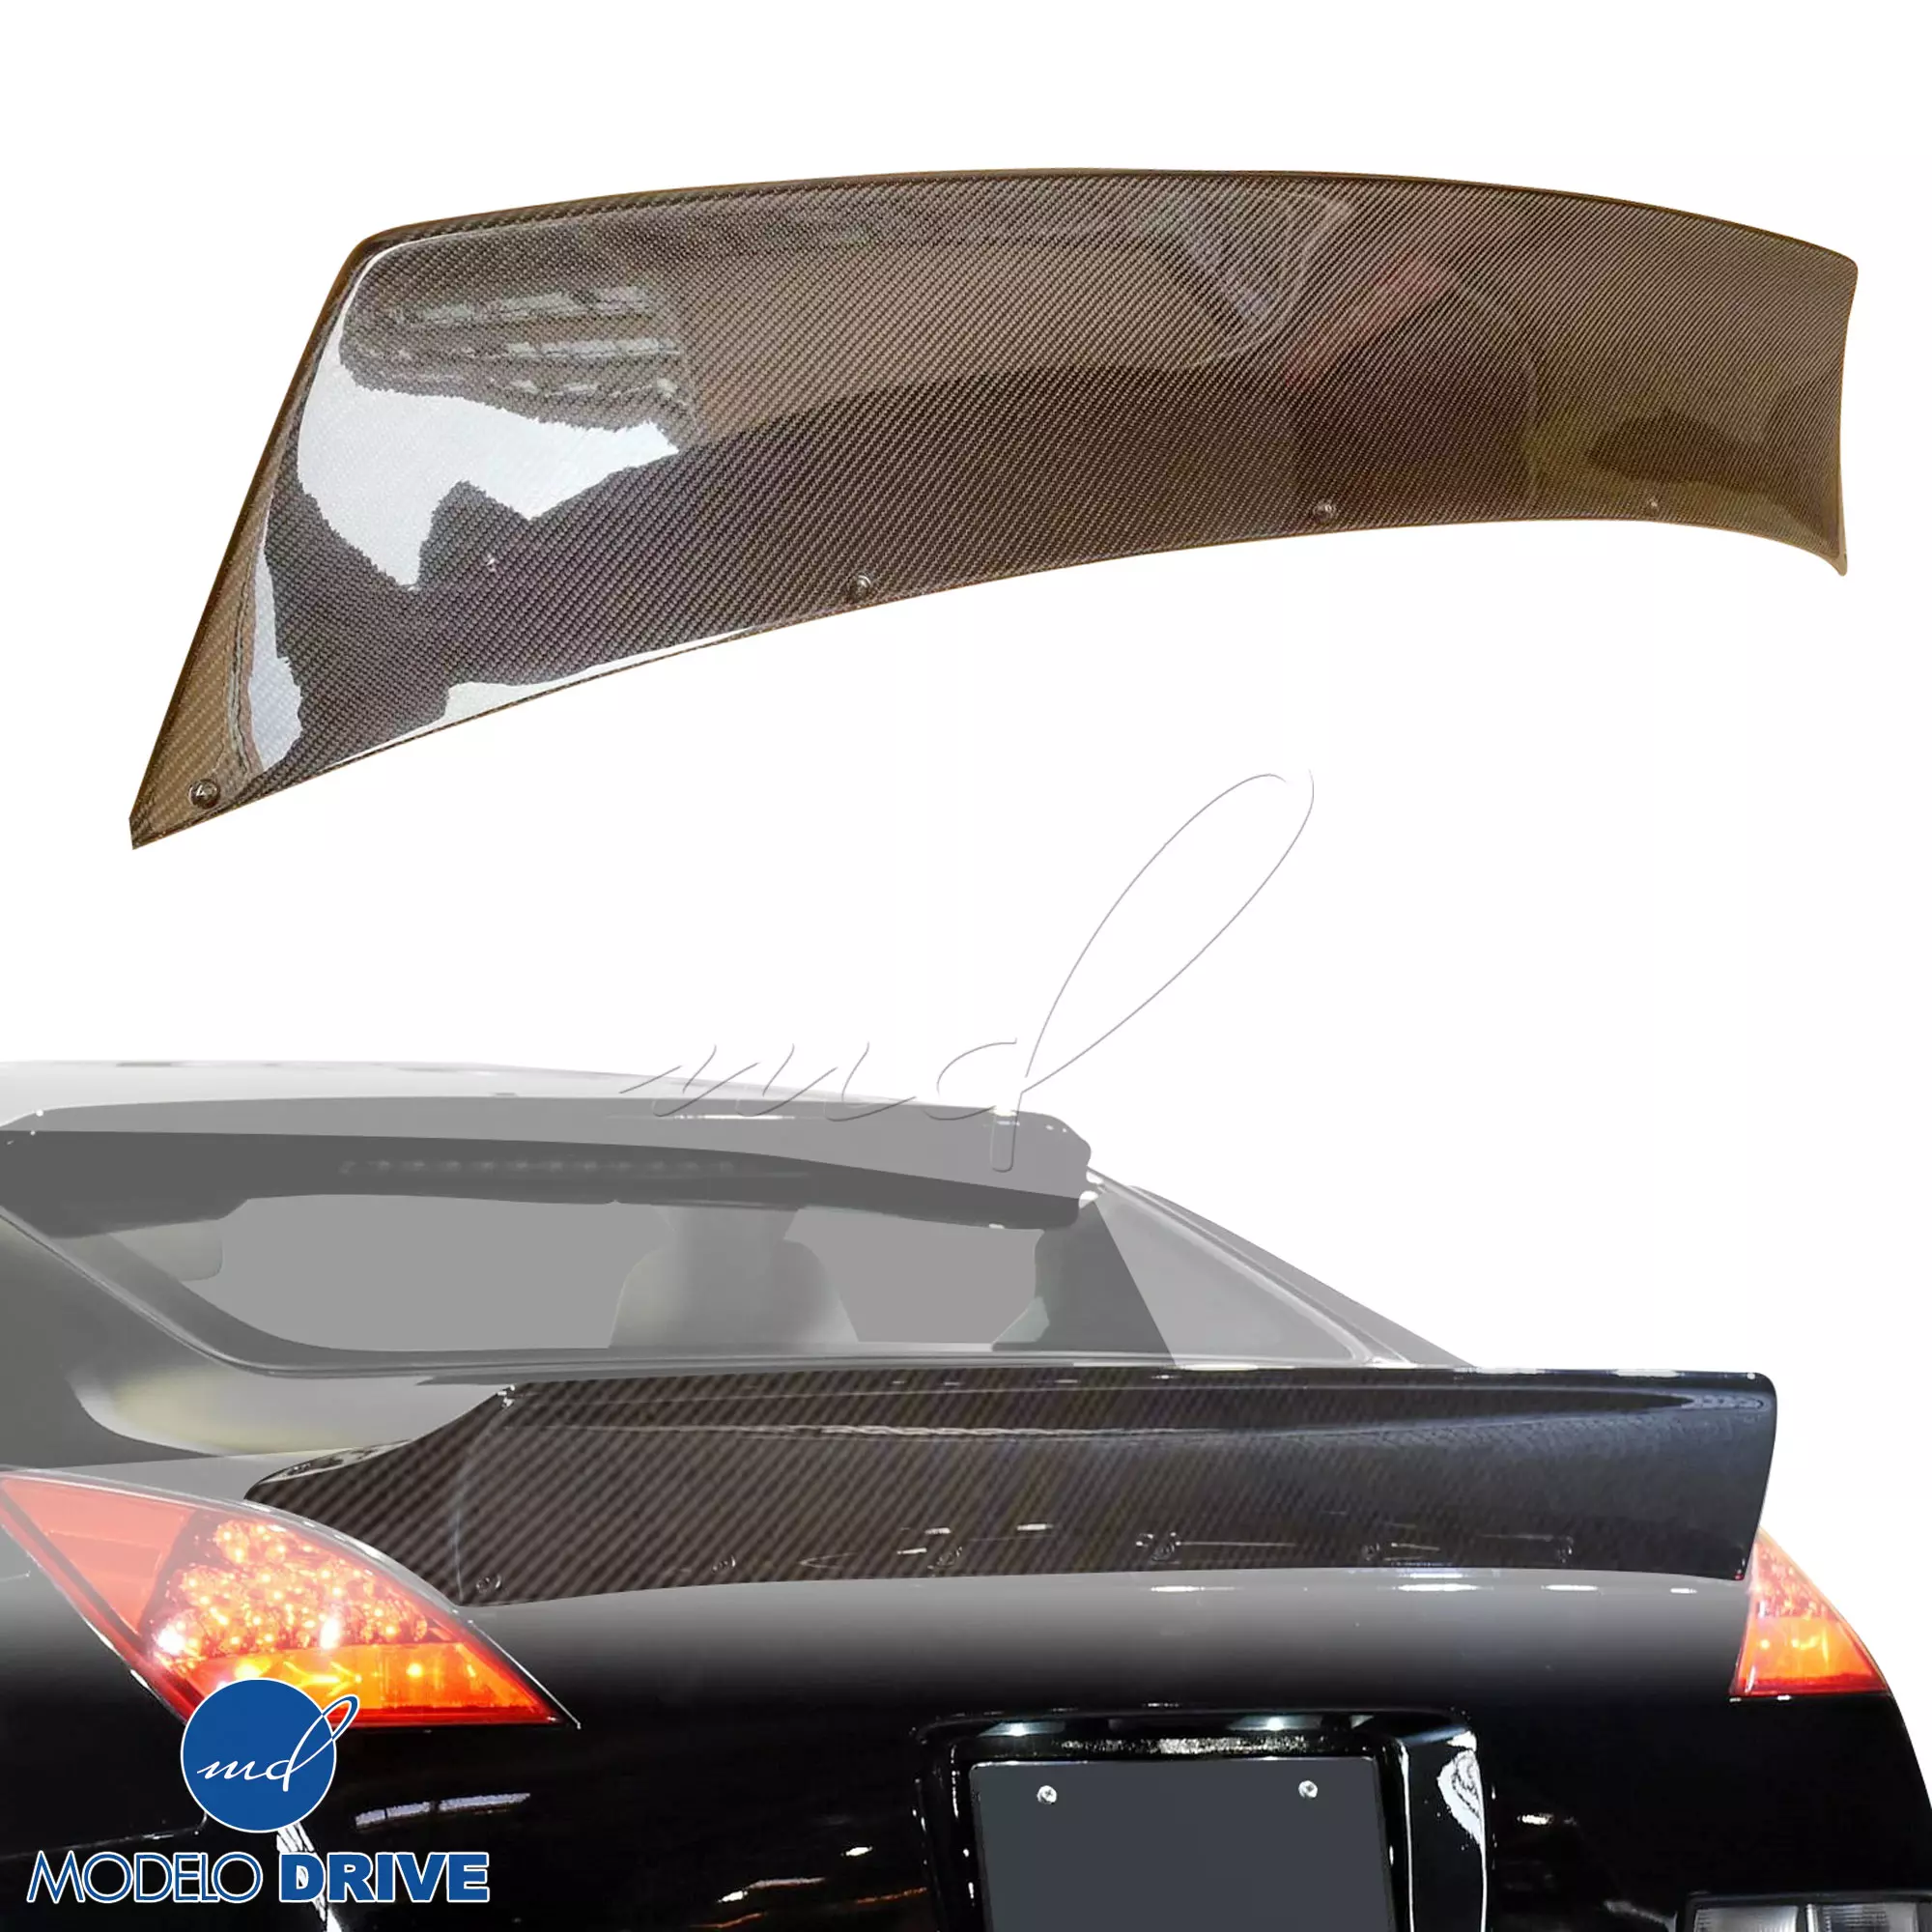 ModeloDrive Carbon Fiber TKYO Spoiler Wing > Nissan 350Z Z33 2003-2008 - Image 6